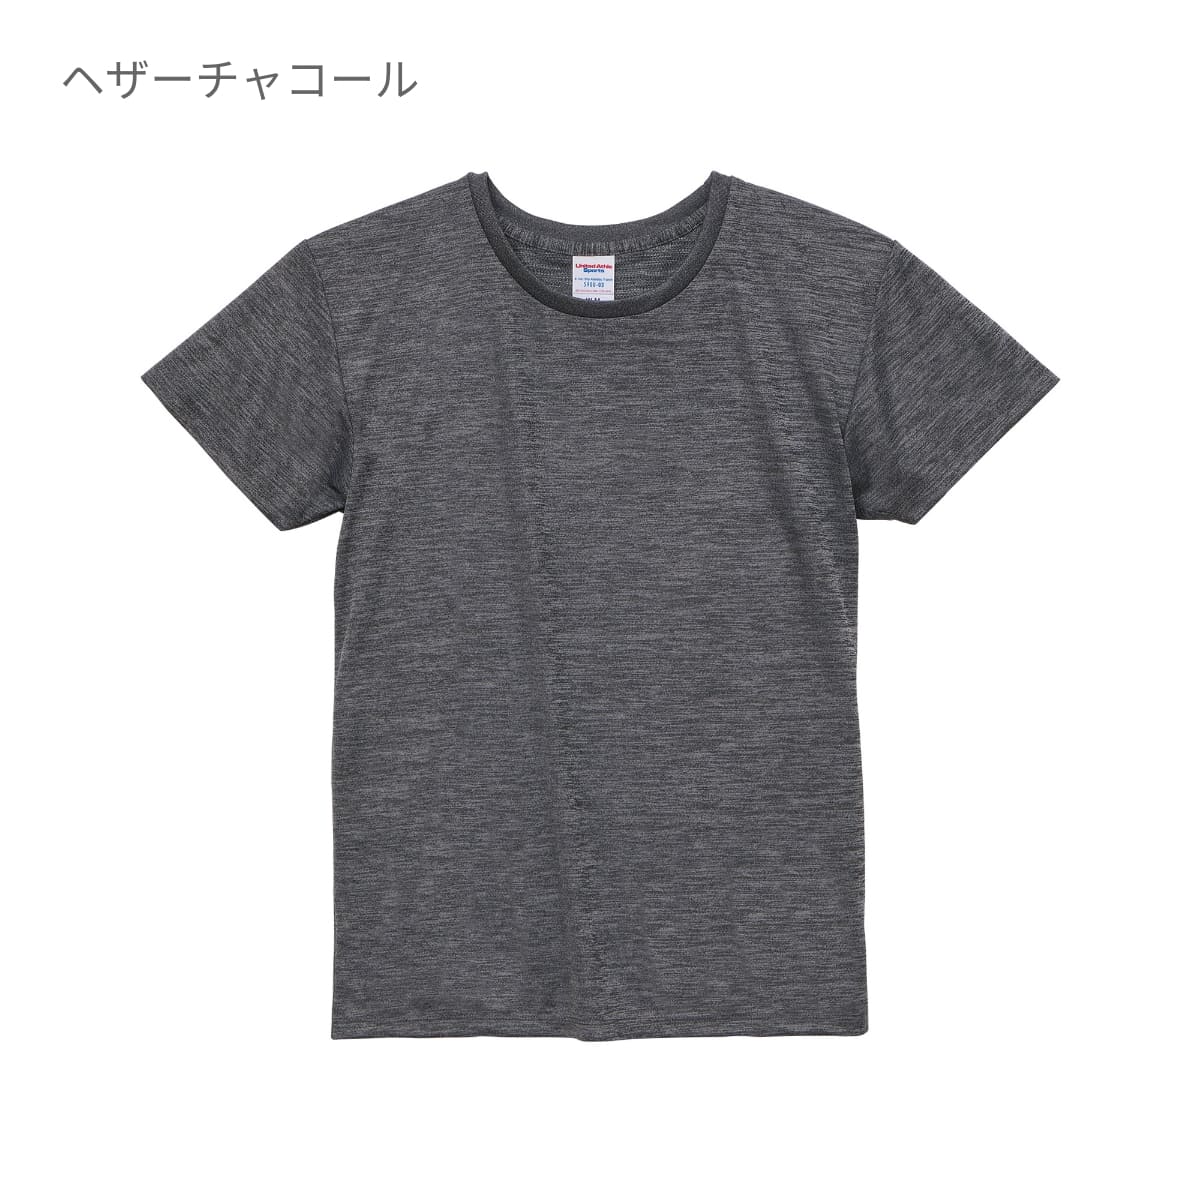 4.1オンス ドライアスレチック Tシャツ | レディース | 1枚 | 5900-03 | ネイビー